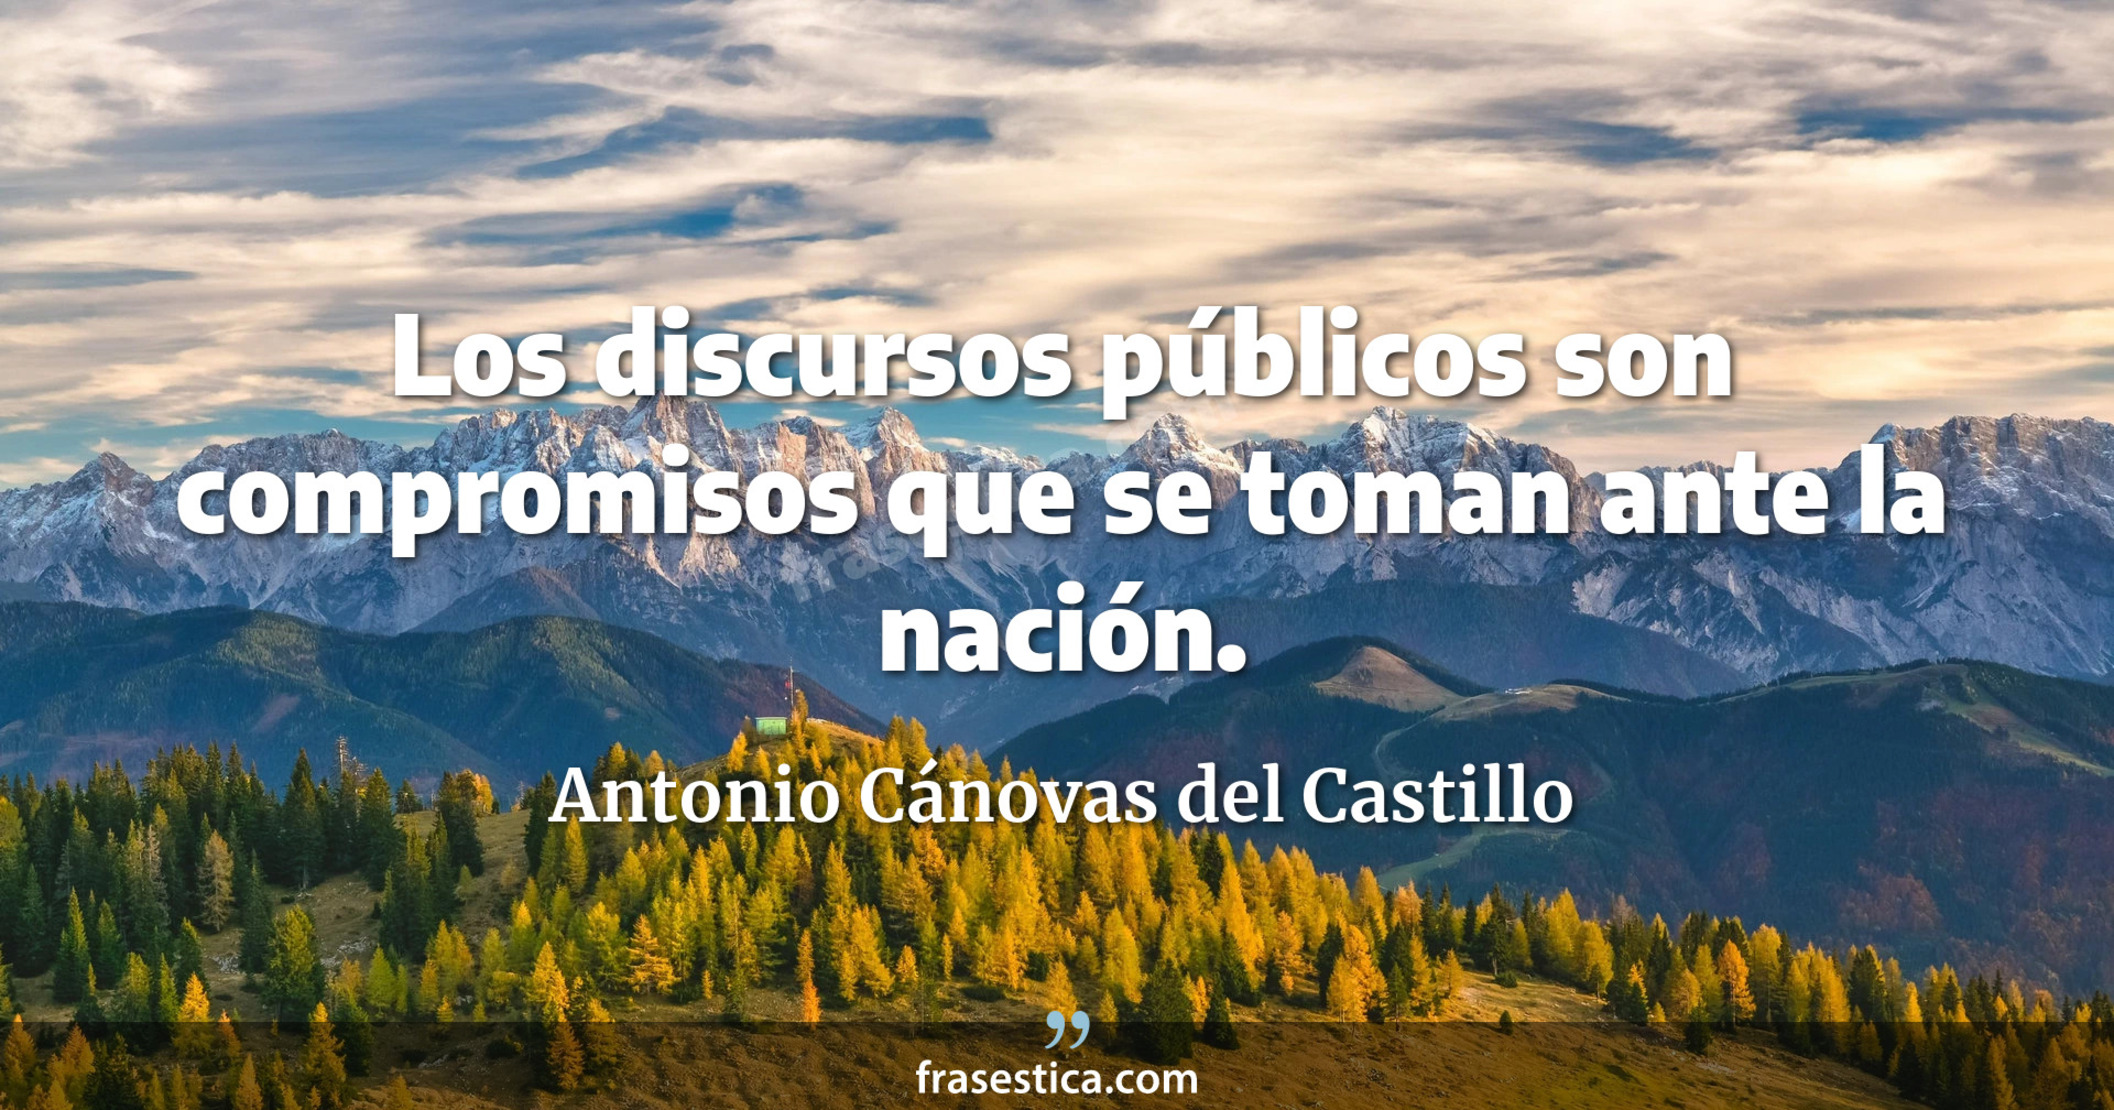 Los discursos públicos son compromisos que se toman ante la nación. - Antonio Cánovas del Castillo